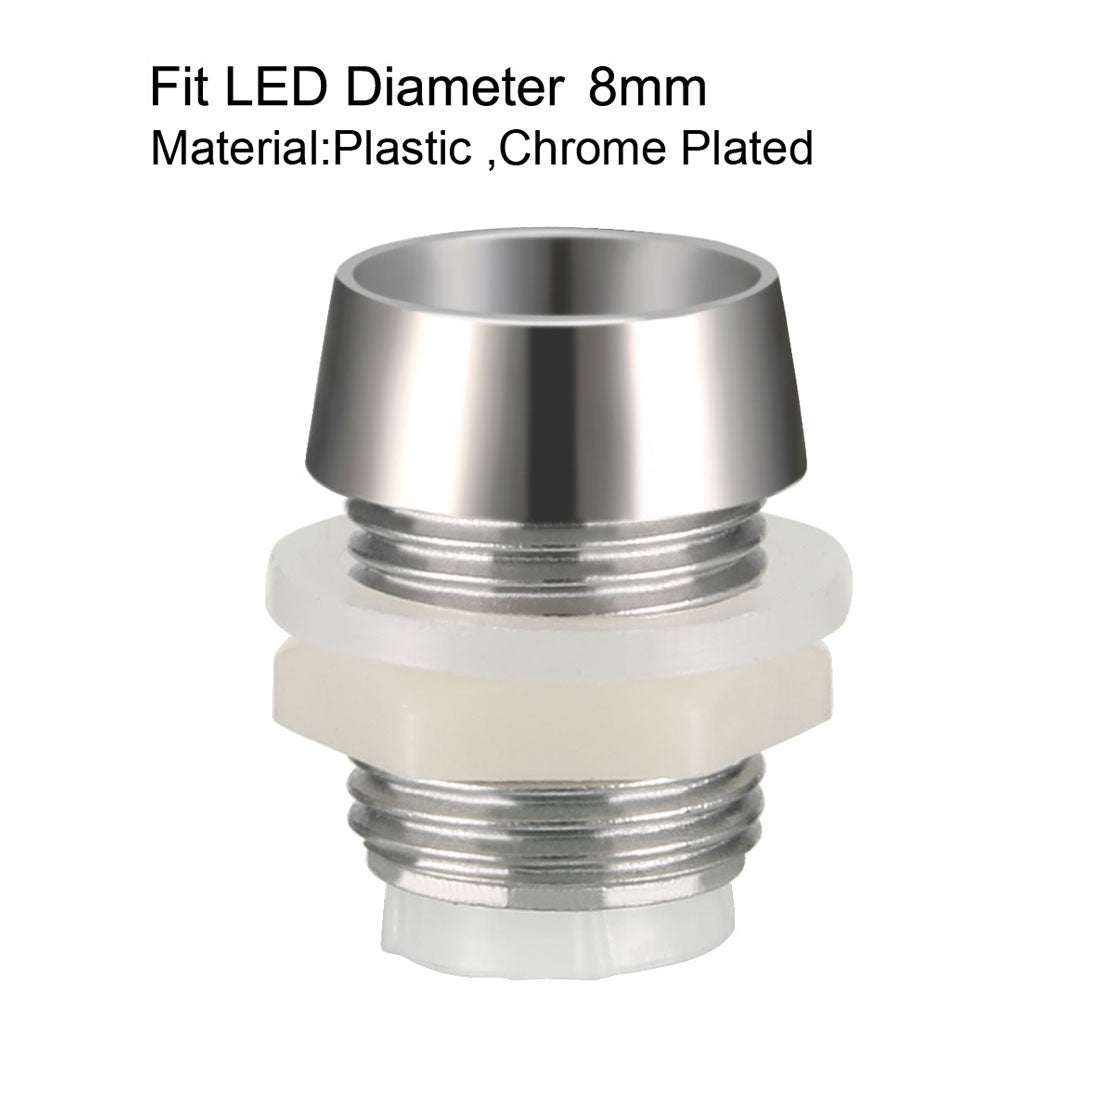 uxcell Uxcell 20pcs 8mm LED Lamp Holder Light Bulb Socket Plastic Chrome Plated for Light-emitting Diode Lighting